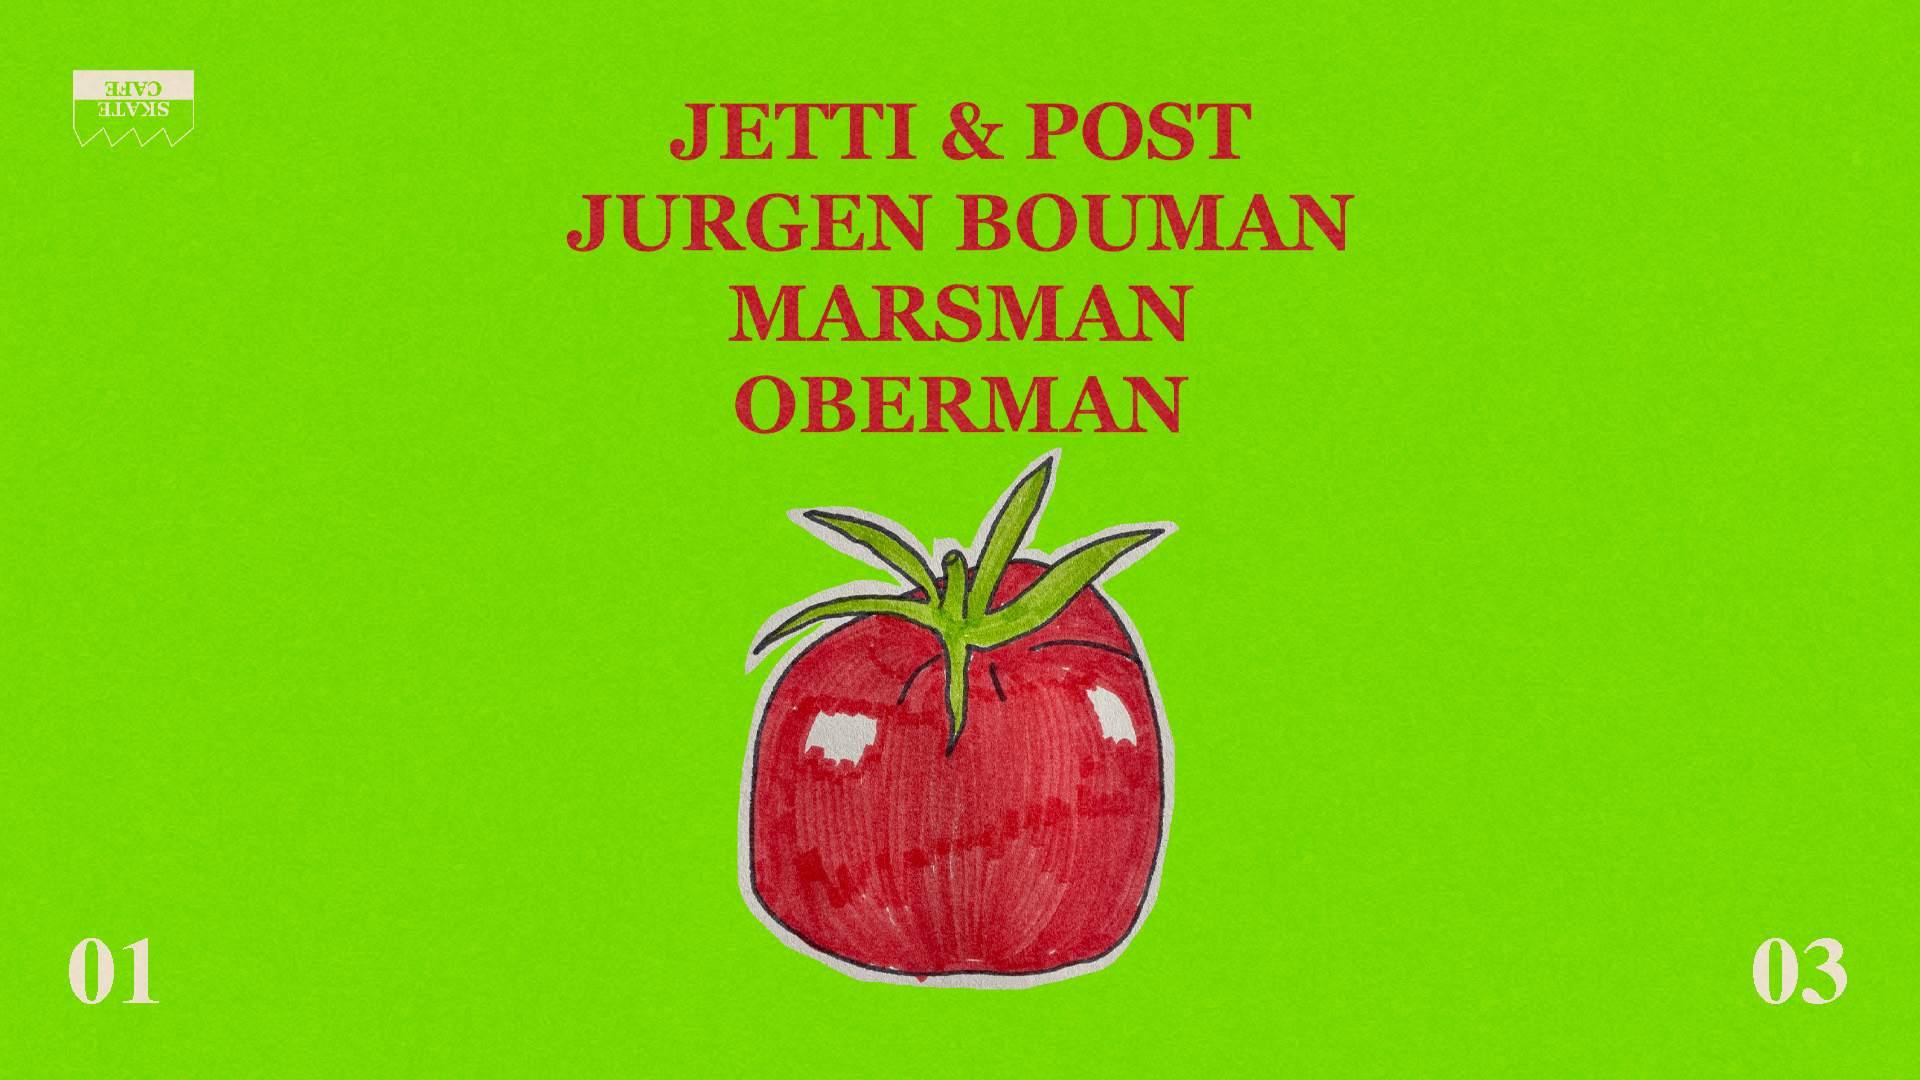 Jetti & Post, Marsman, Oberman, JURGEN BOUMAN - Página frontal